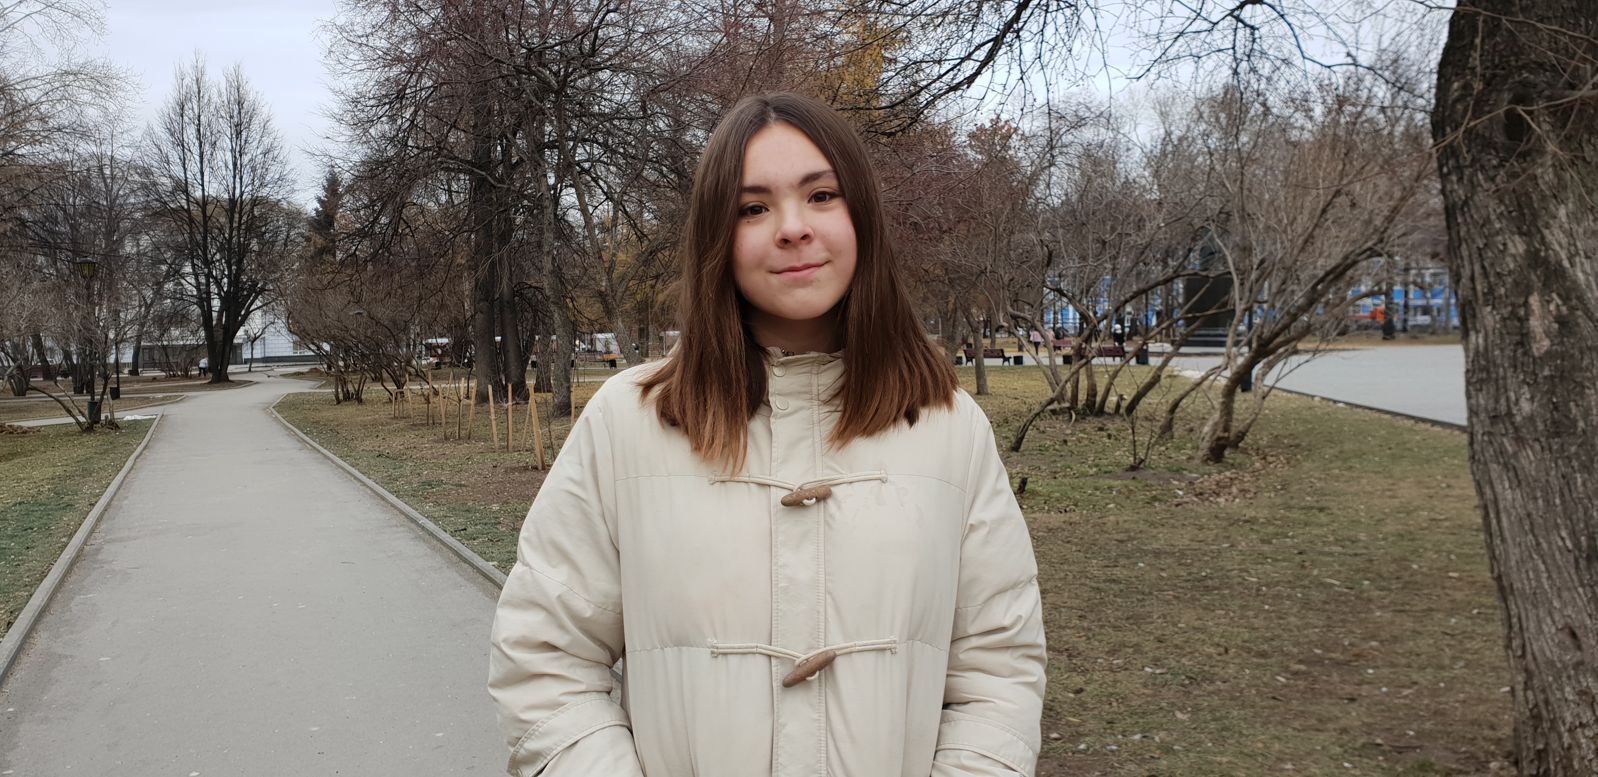 Пермская школьница без бюджета сняла двухминутный фильм про Пермь на английском языке. За сутки он собрал десятки тысяч просмотров